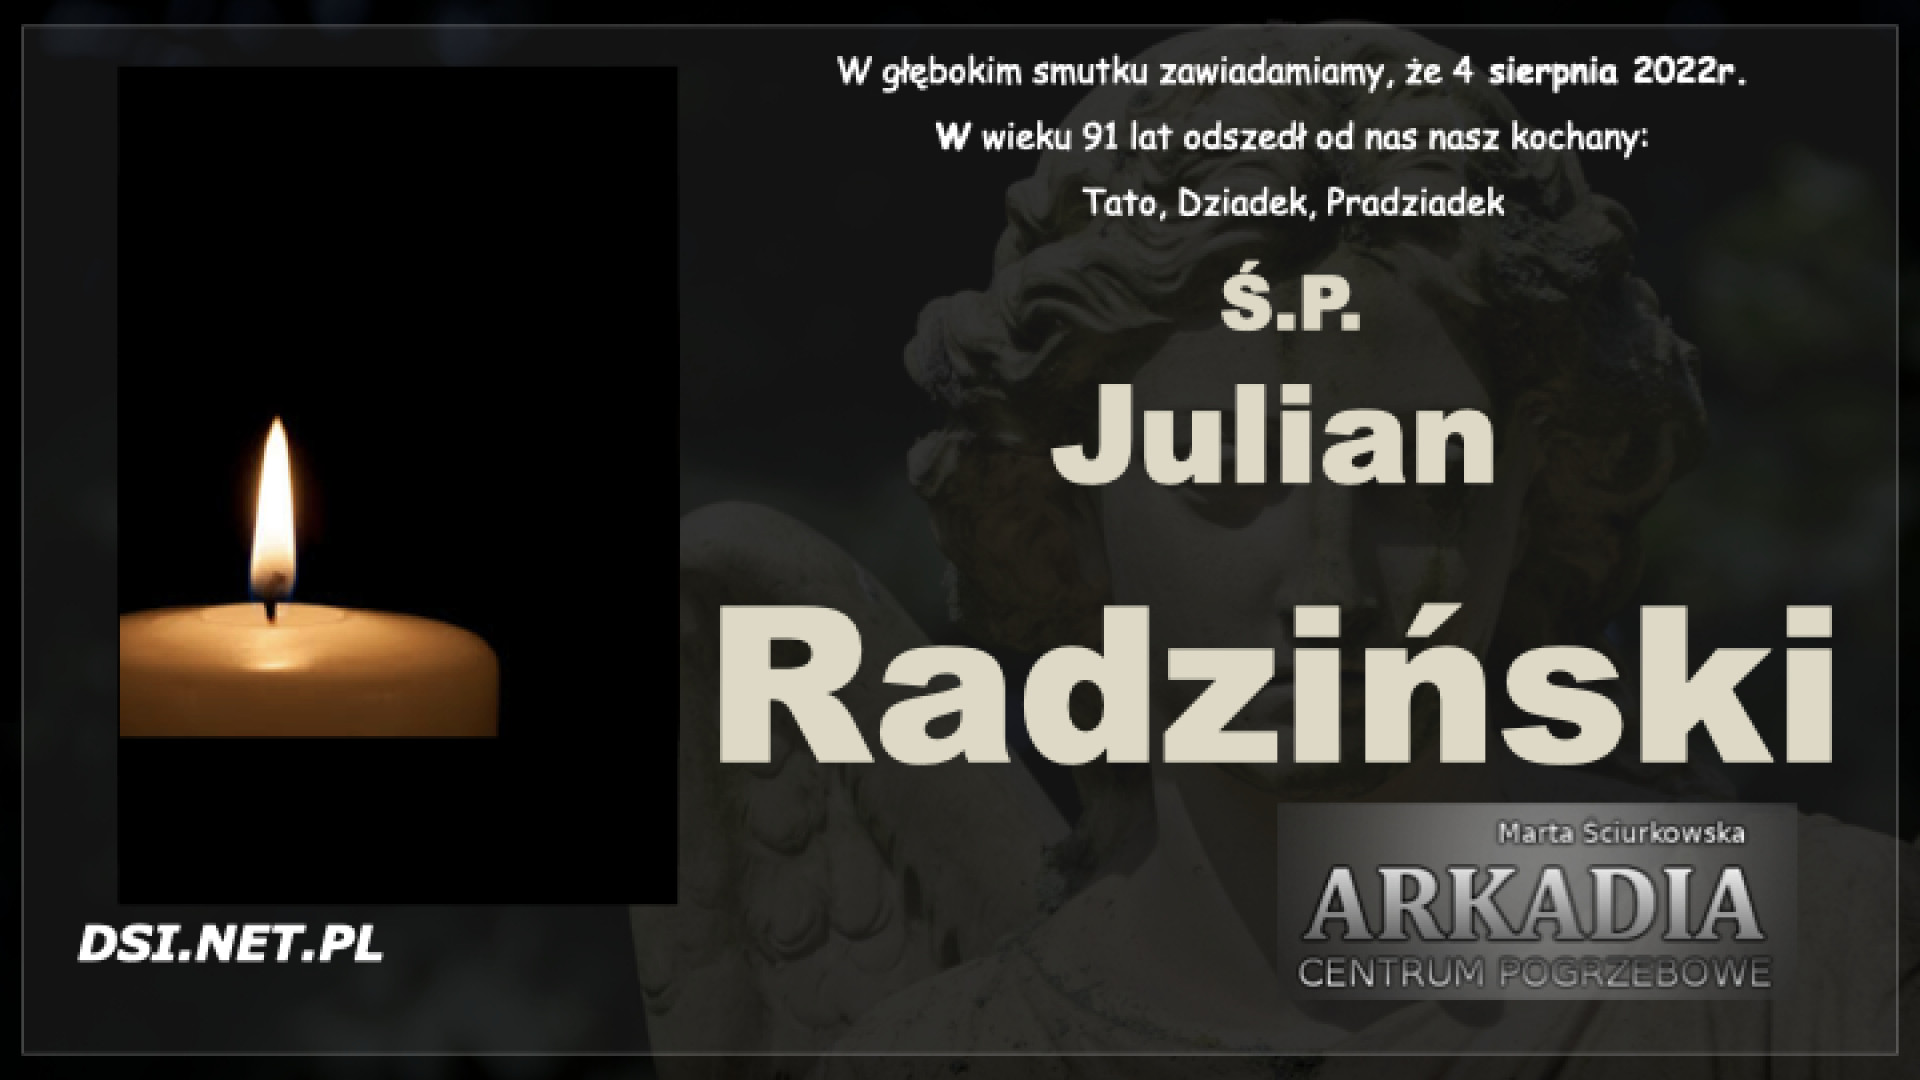 Ś.P. Julian Radziński